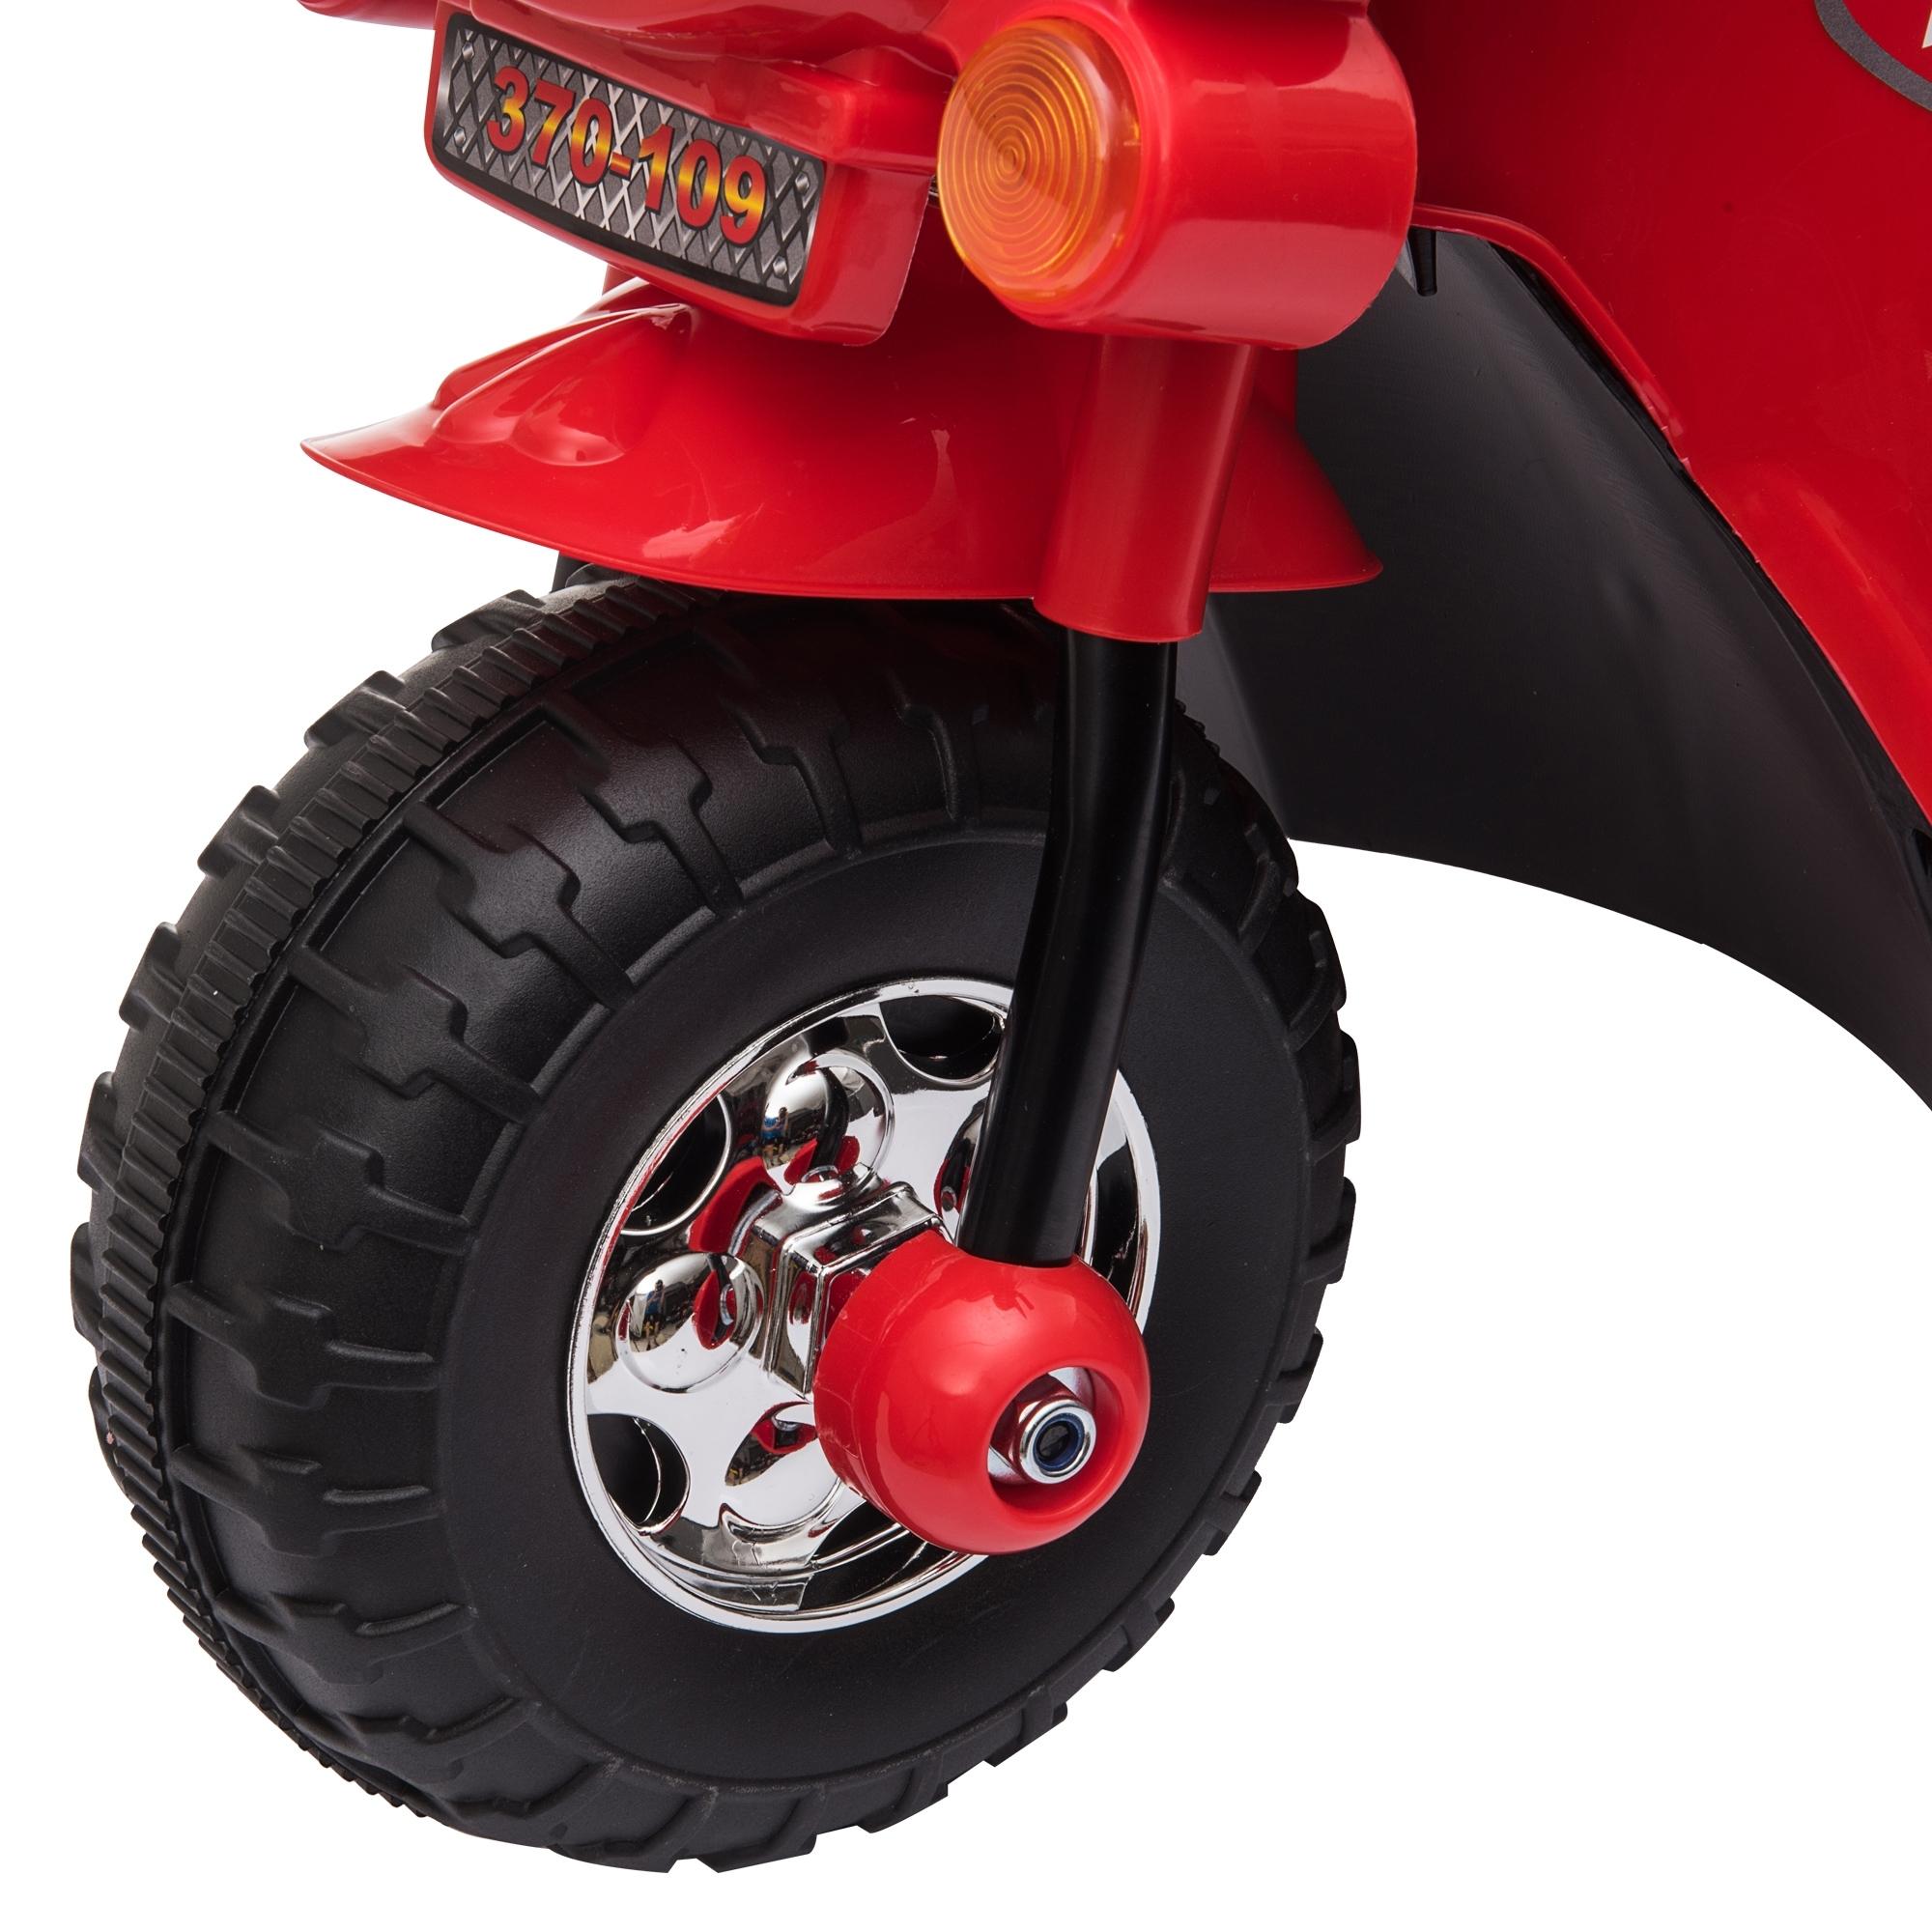 Moto scooter électrique pour enfants modèle policier 6 V 3 Km/h fonctions lumineuses et sonores top case rouge